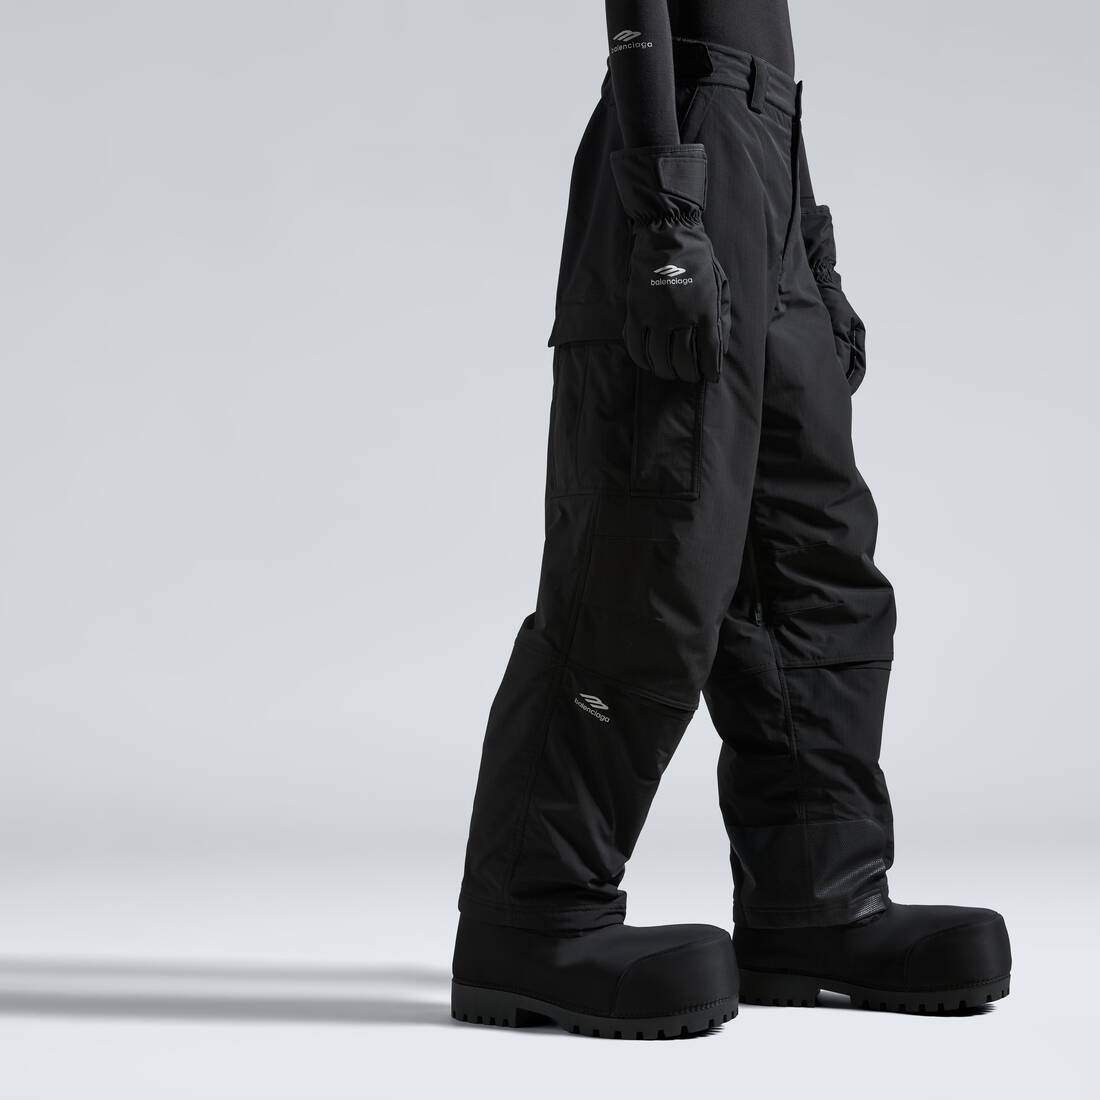 Skiwear - 3b Sports Icon Ski Leggings in Black